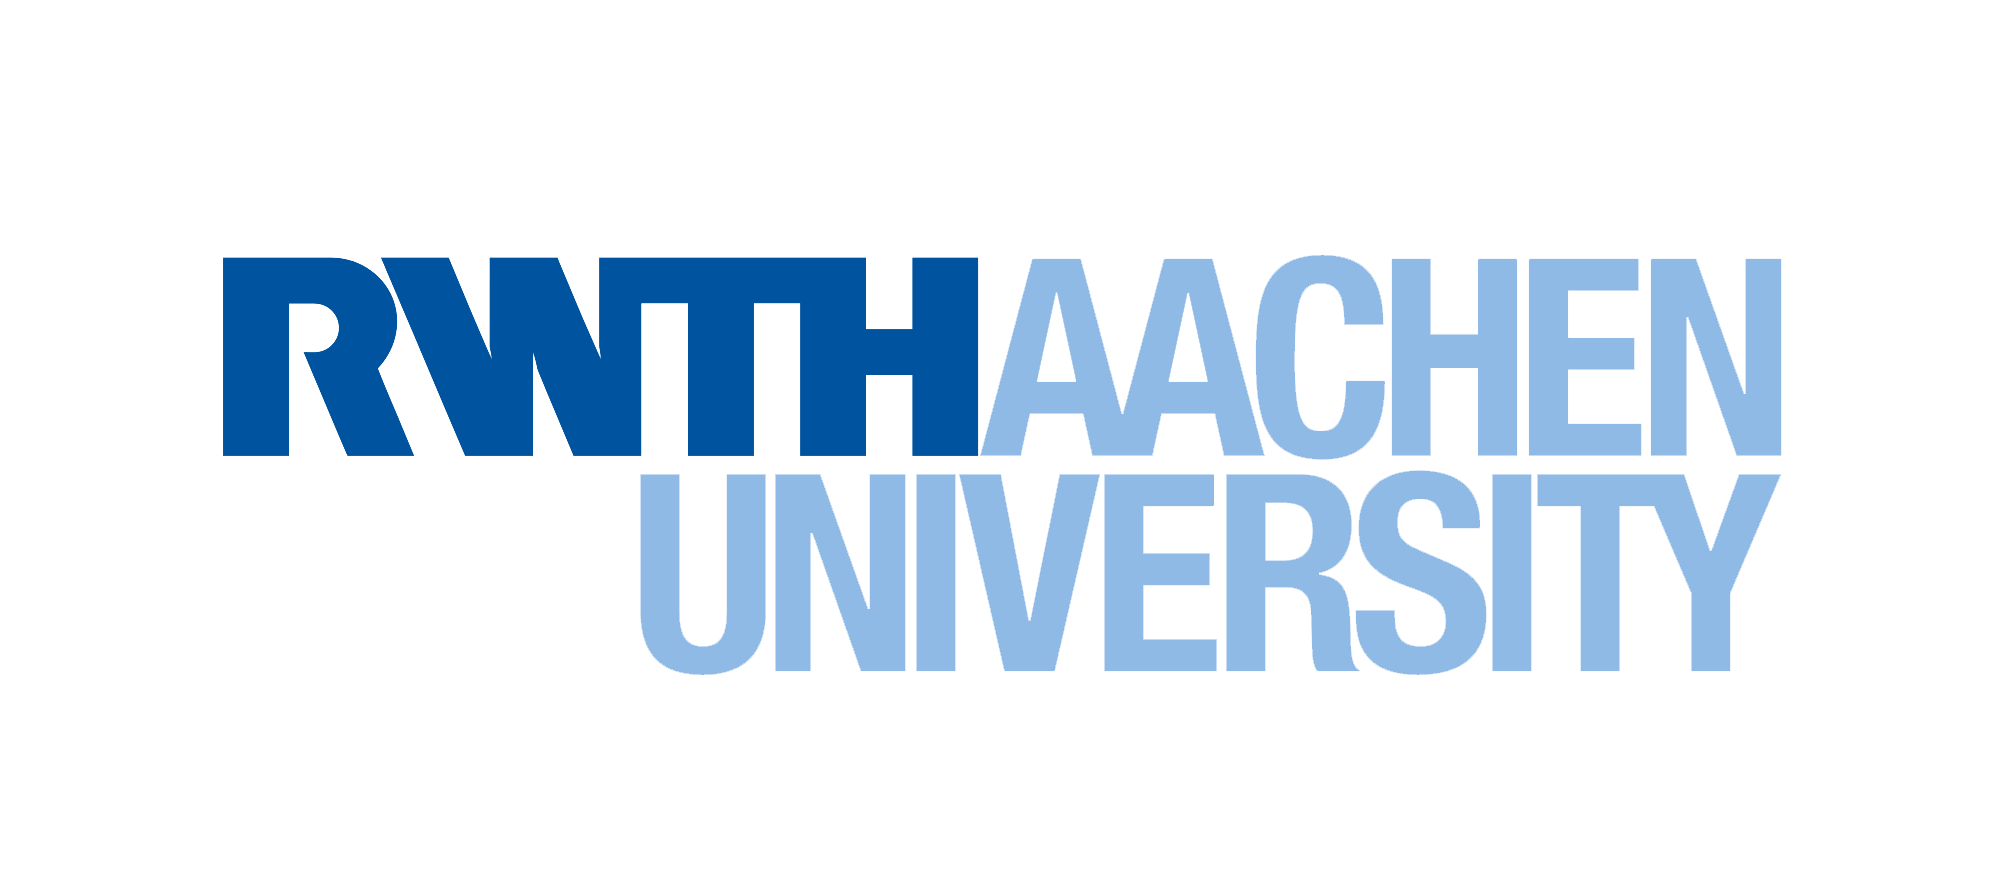 University of Aachen logo